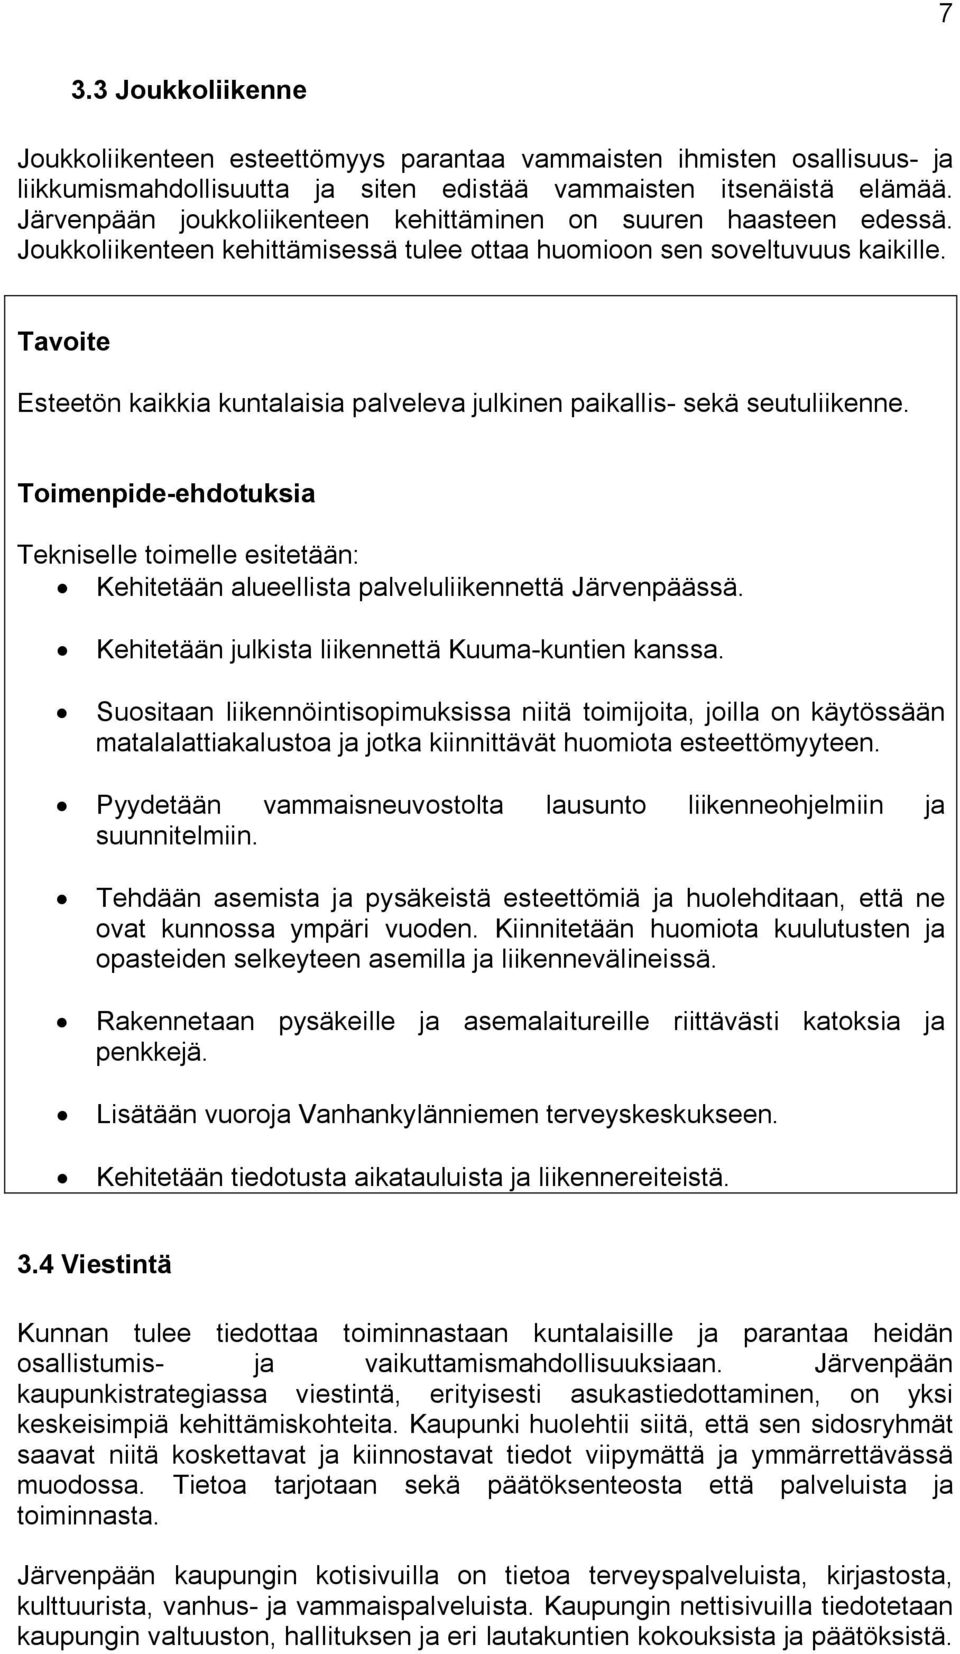 Esteetön kaikkia kuntalaisia palveleva julkinen paikallis- sekä seutuliikenne. Tekniselle toimelle esitetään: Kehitetään alueellista palveluliikennettä Järvenpäässä.